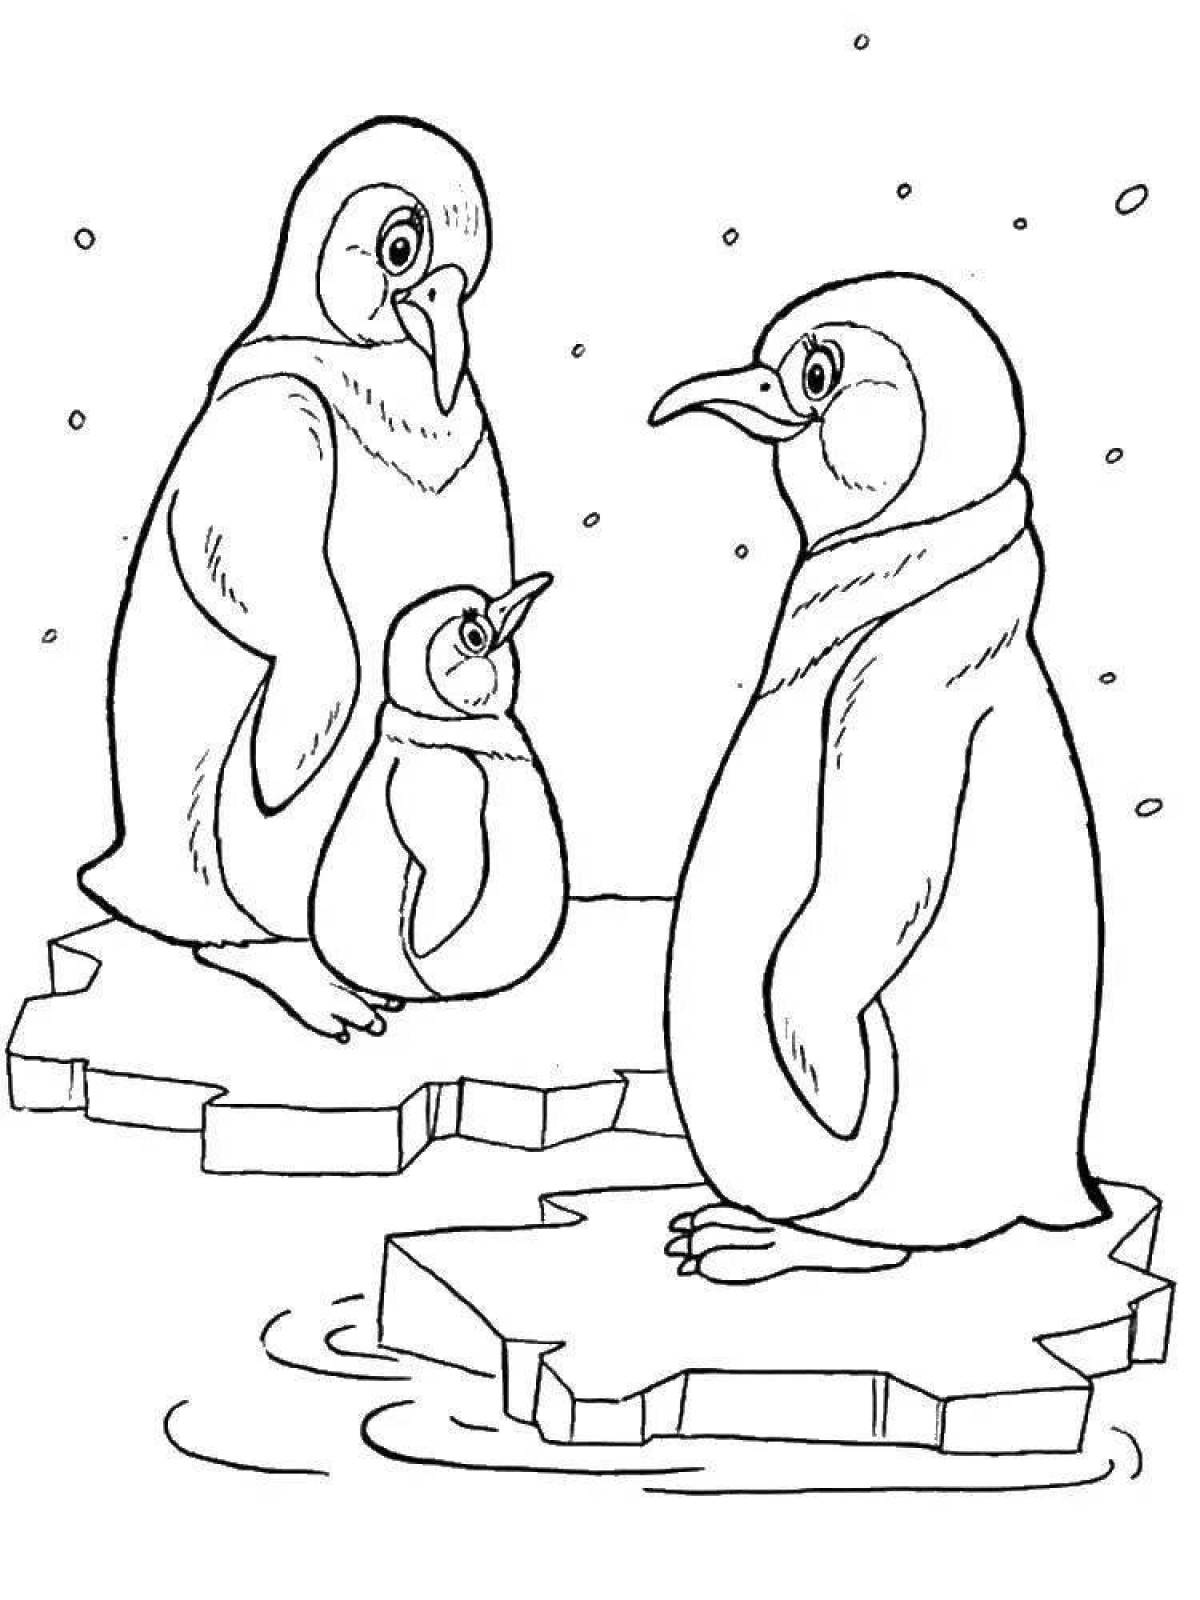 Раскраска яркий пингвин на льду